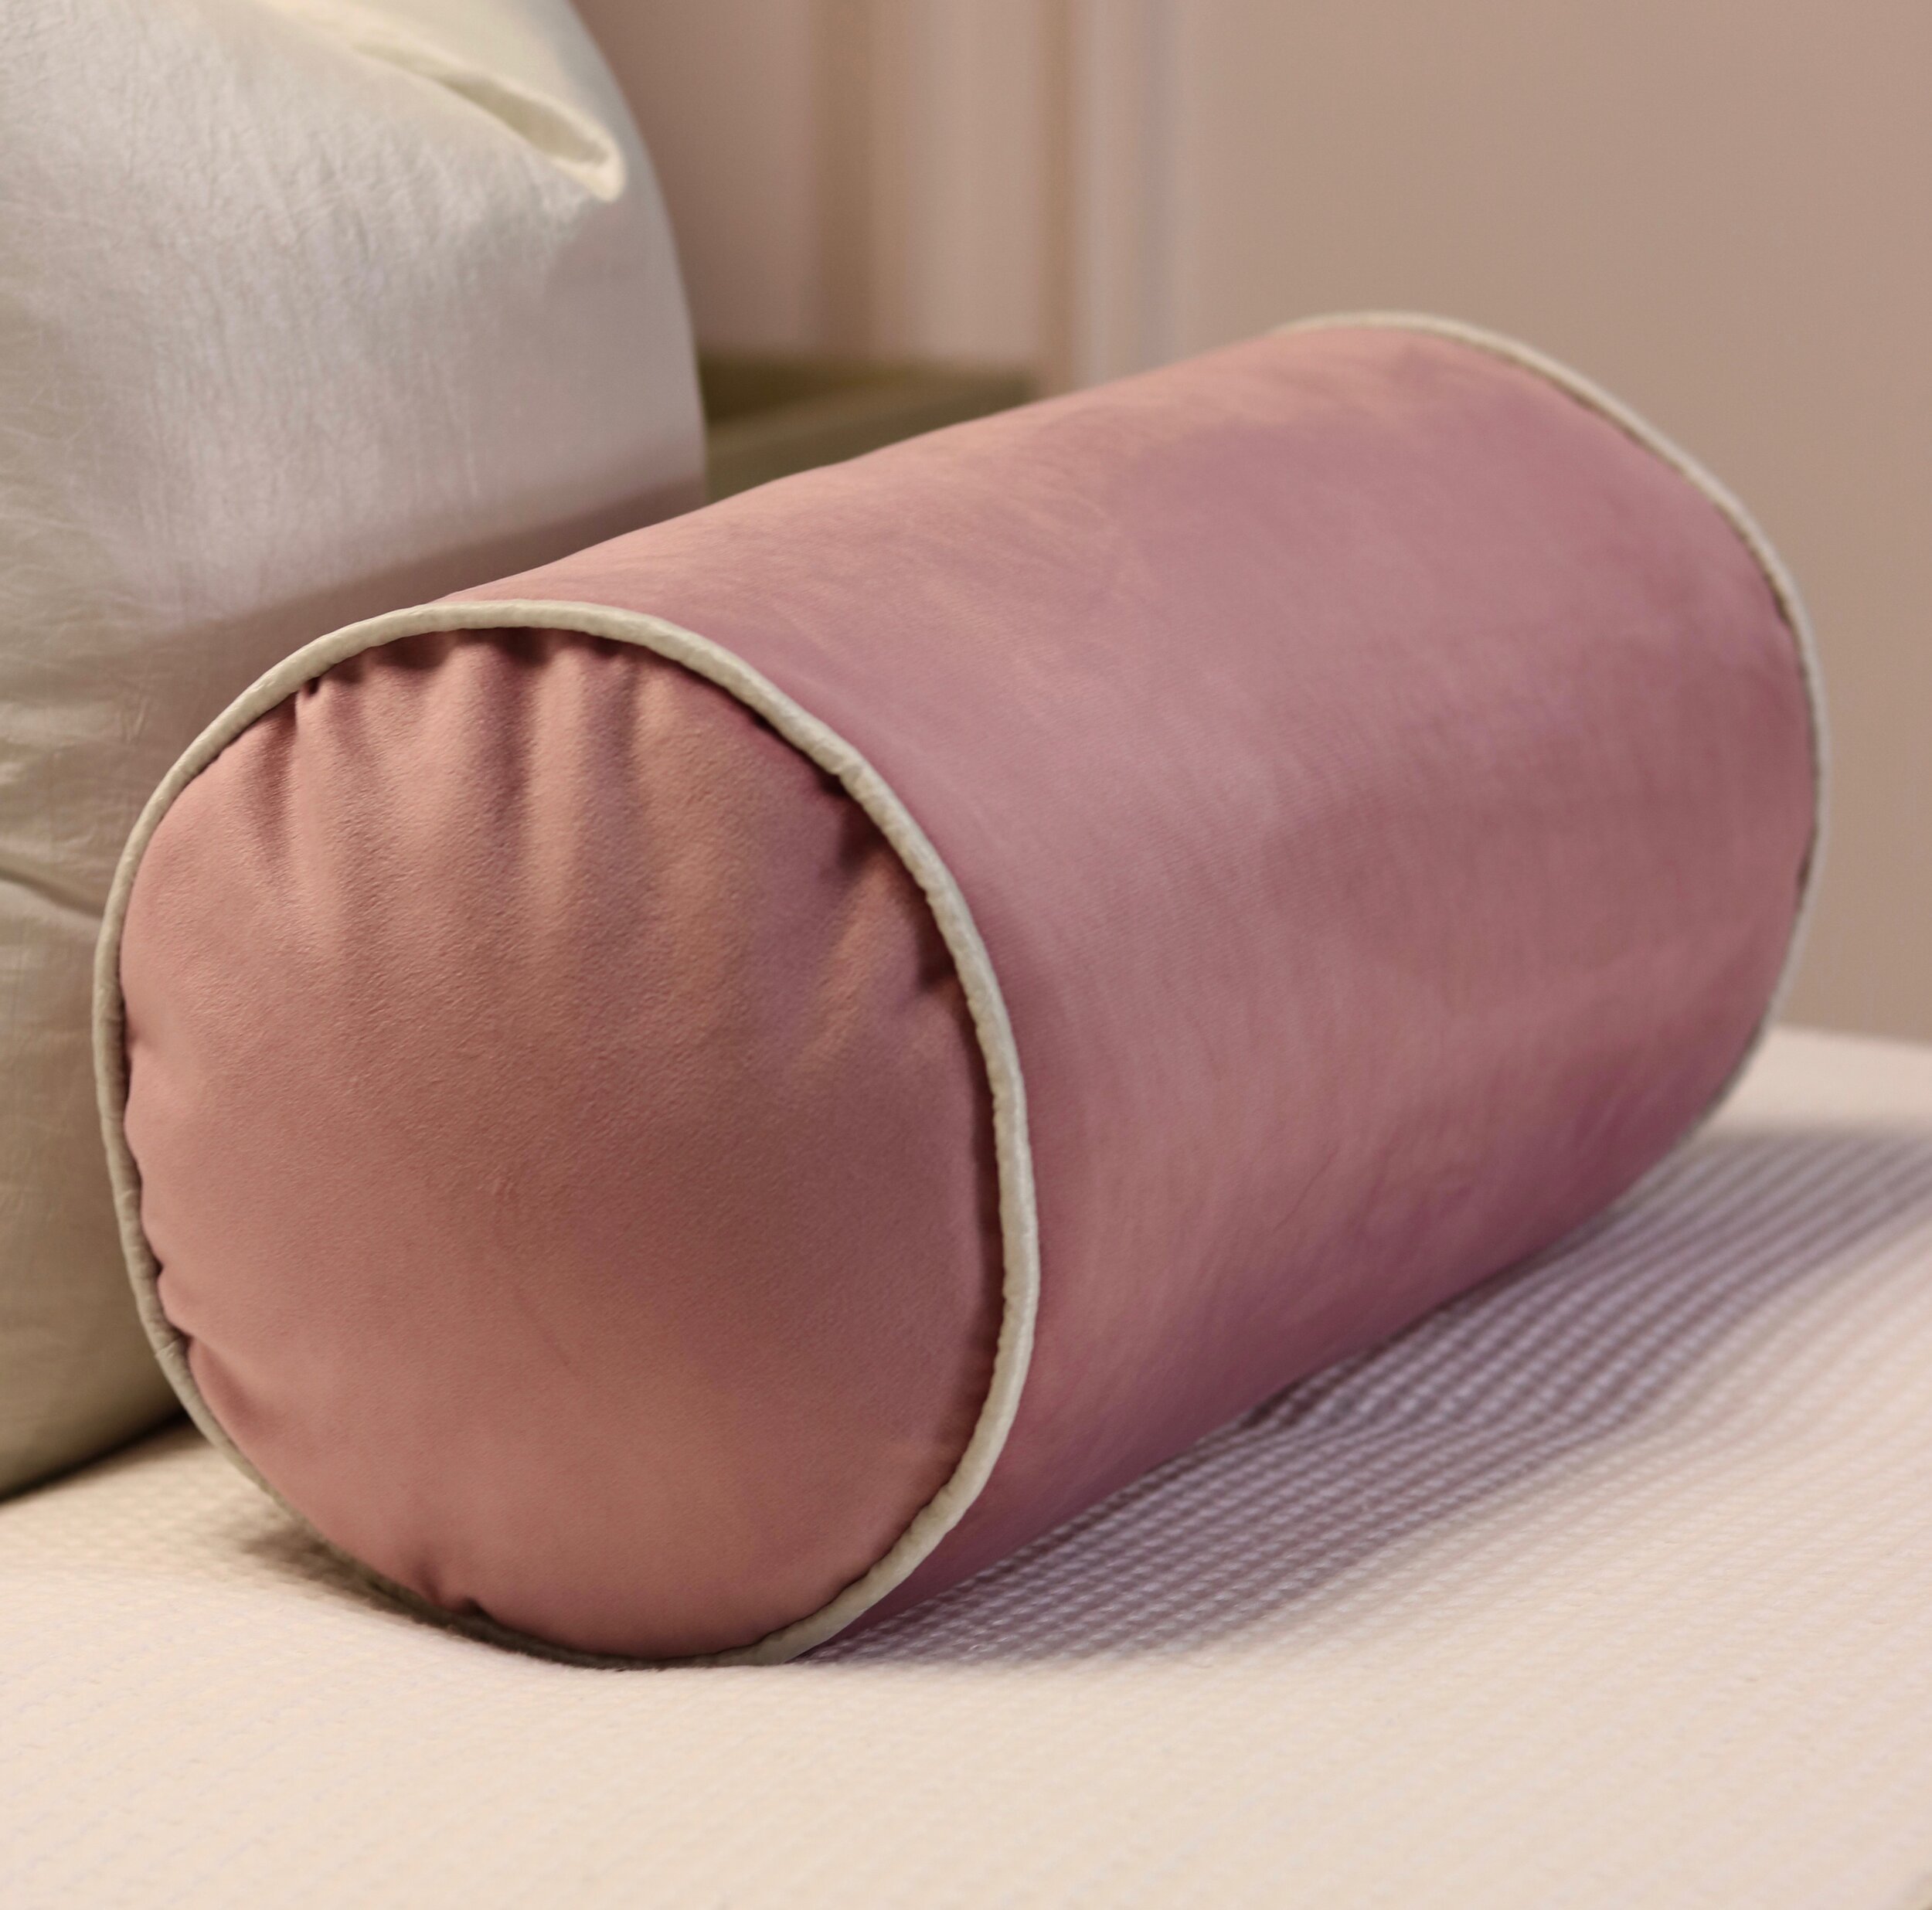 pink bolster cushion